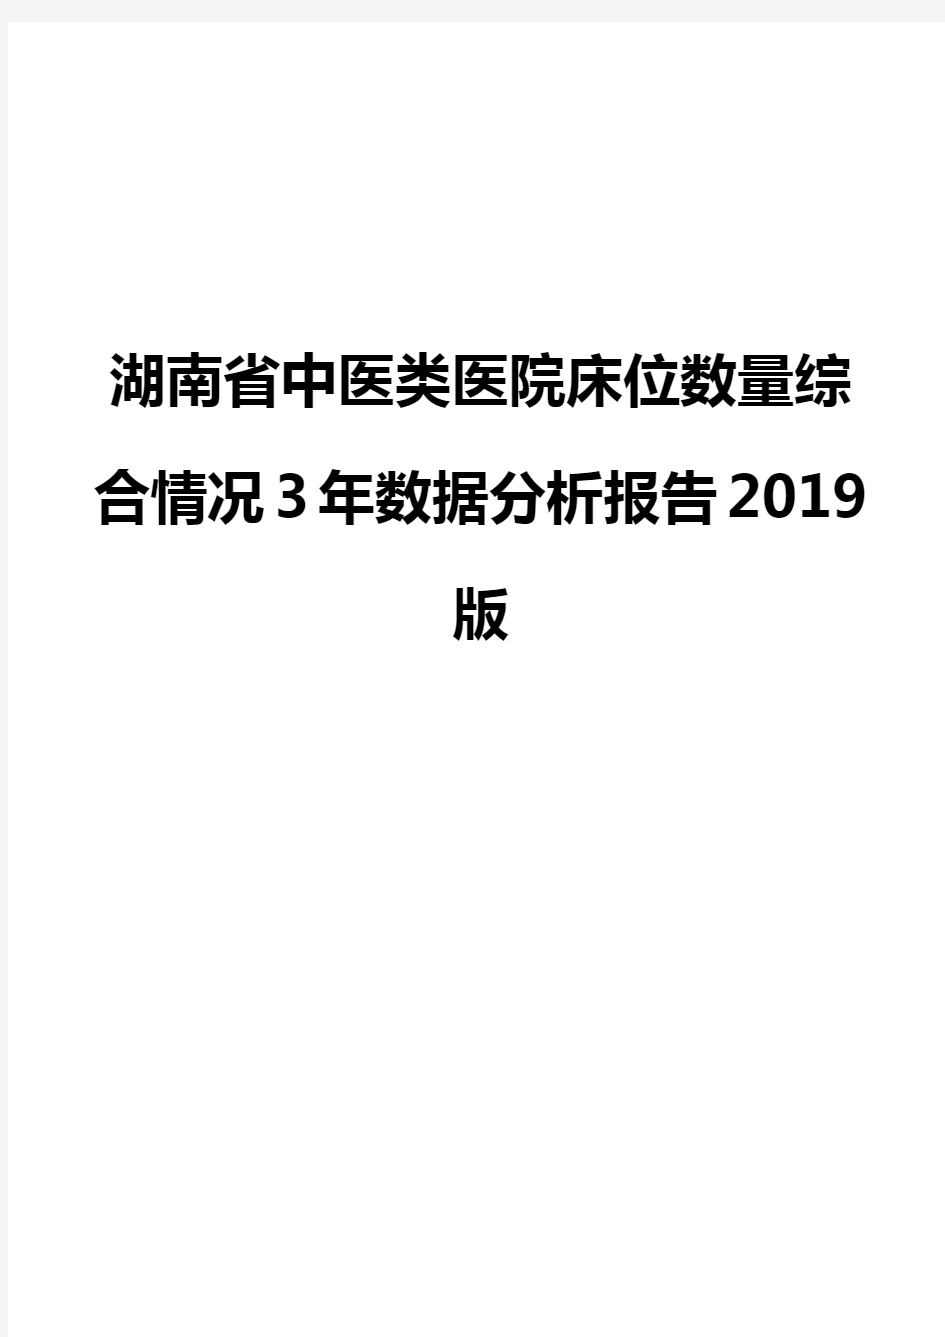 湖南省中医类医院床位数量综合情况3年数据分析报告2019版